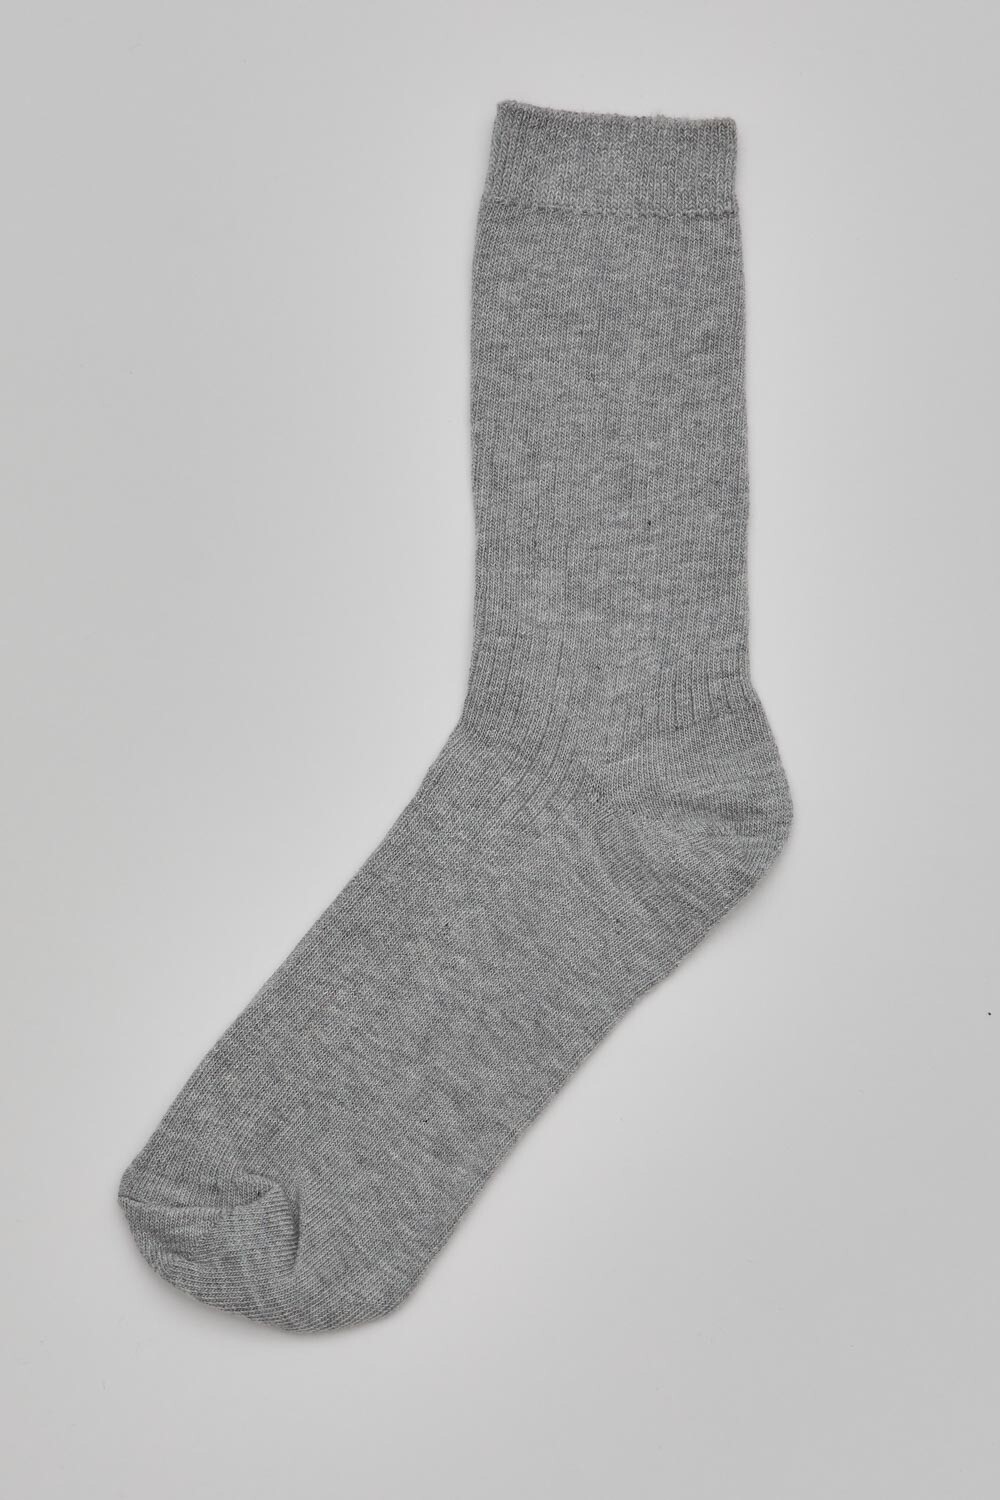 Носки из хлопка серого цвета